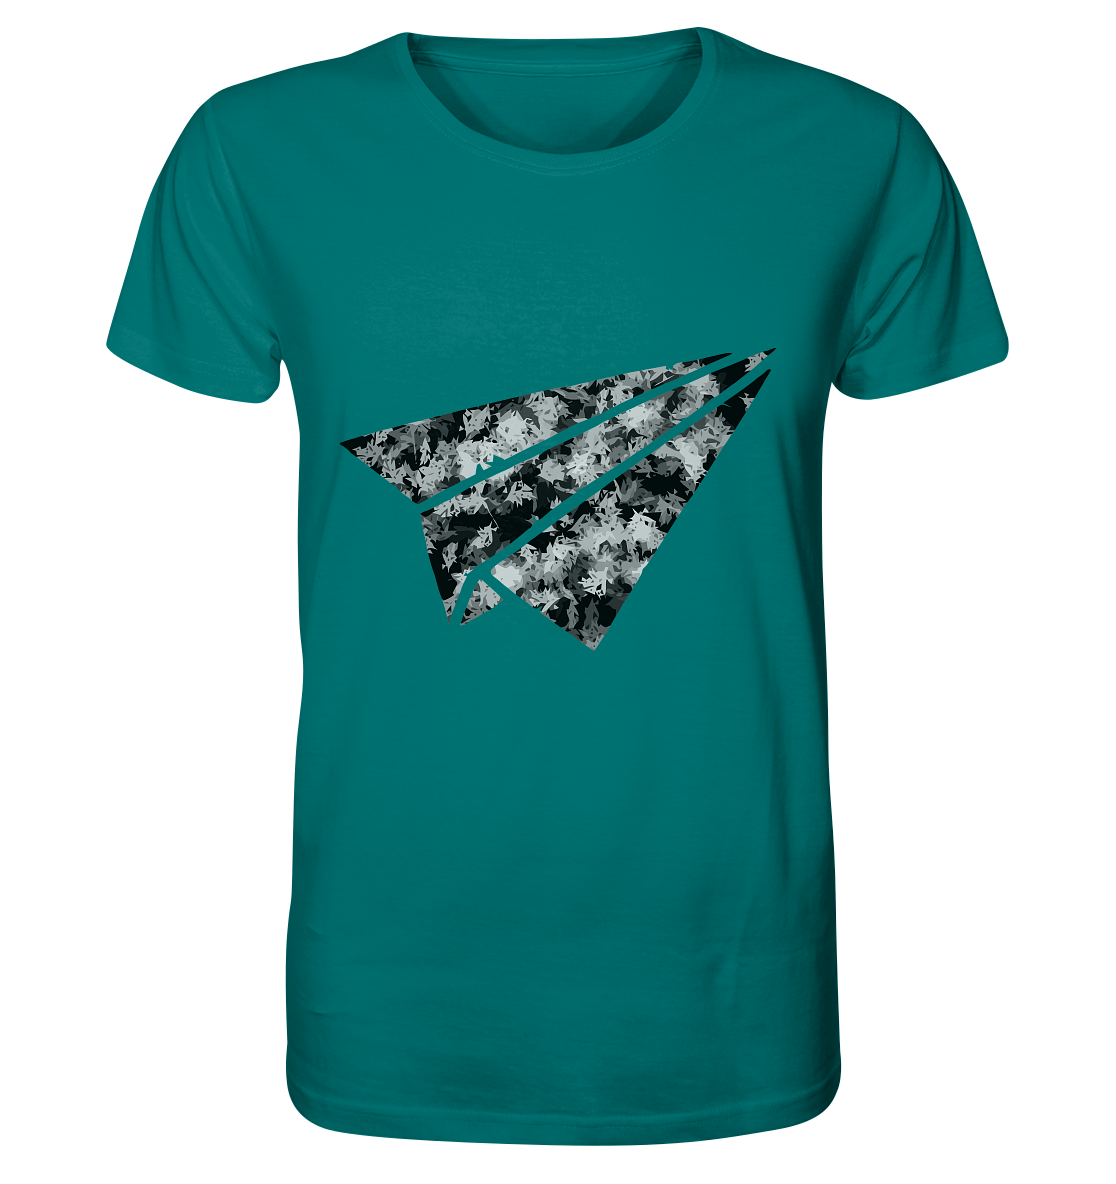 Flieger Shirt - Organic Shirt